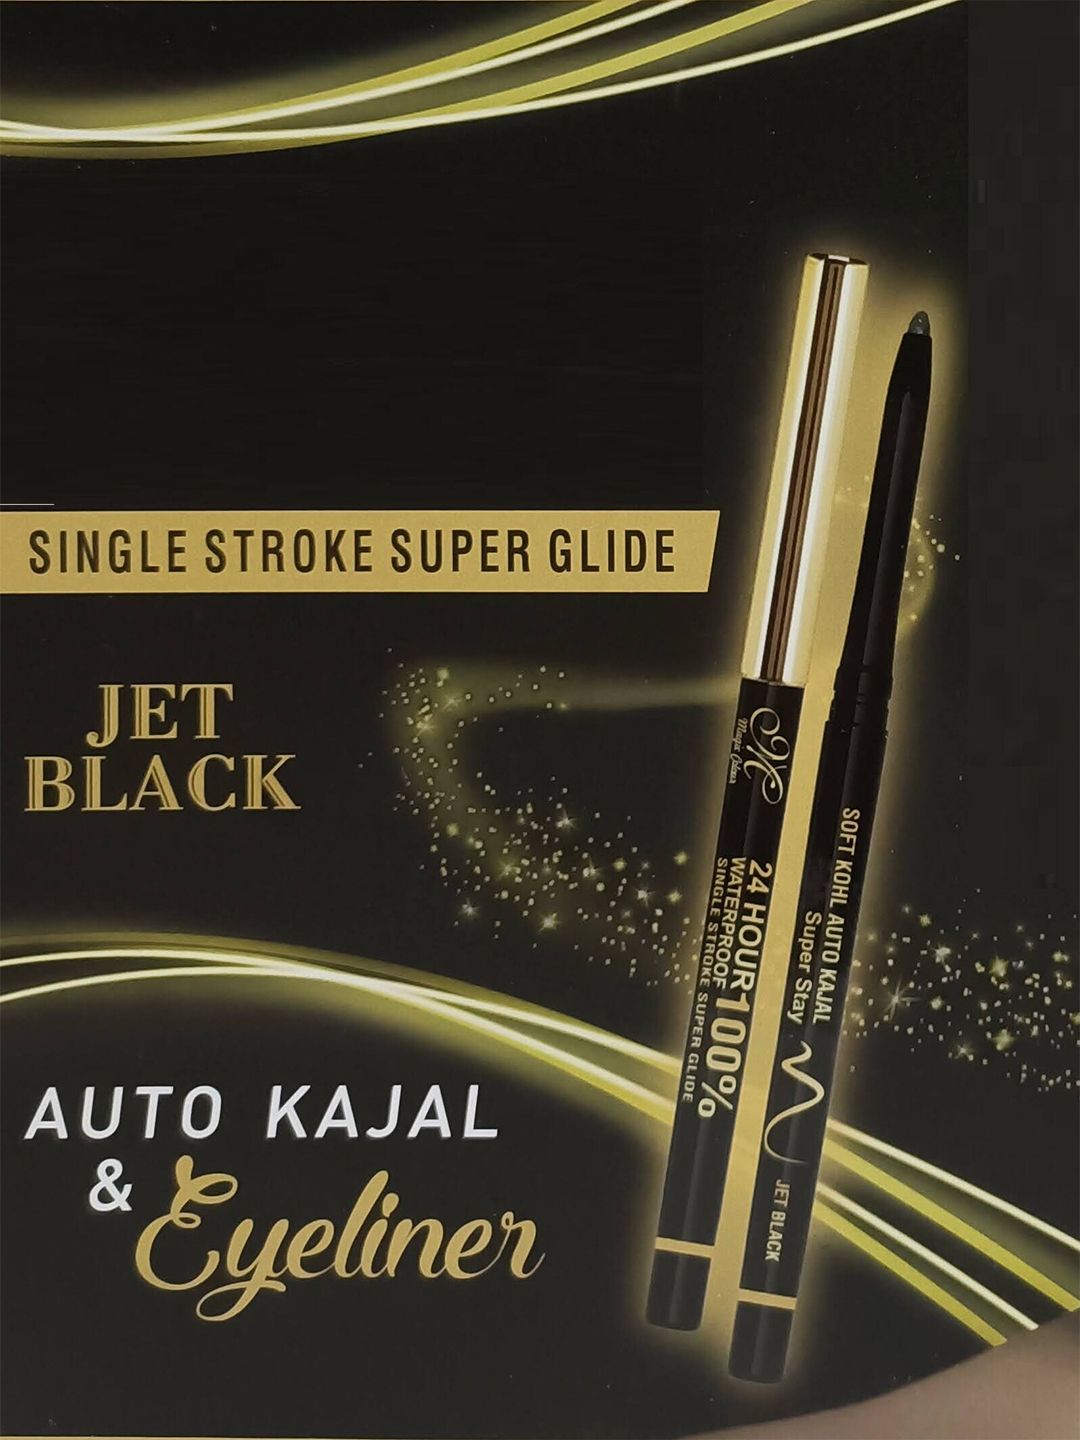 Magic Colour Single Stroke Super Glide Auto Kajal & Eyeliner Pen - Jet Black 0.35 gm Price in India